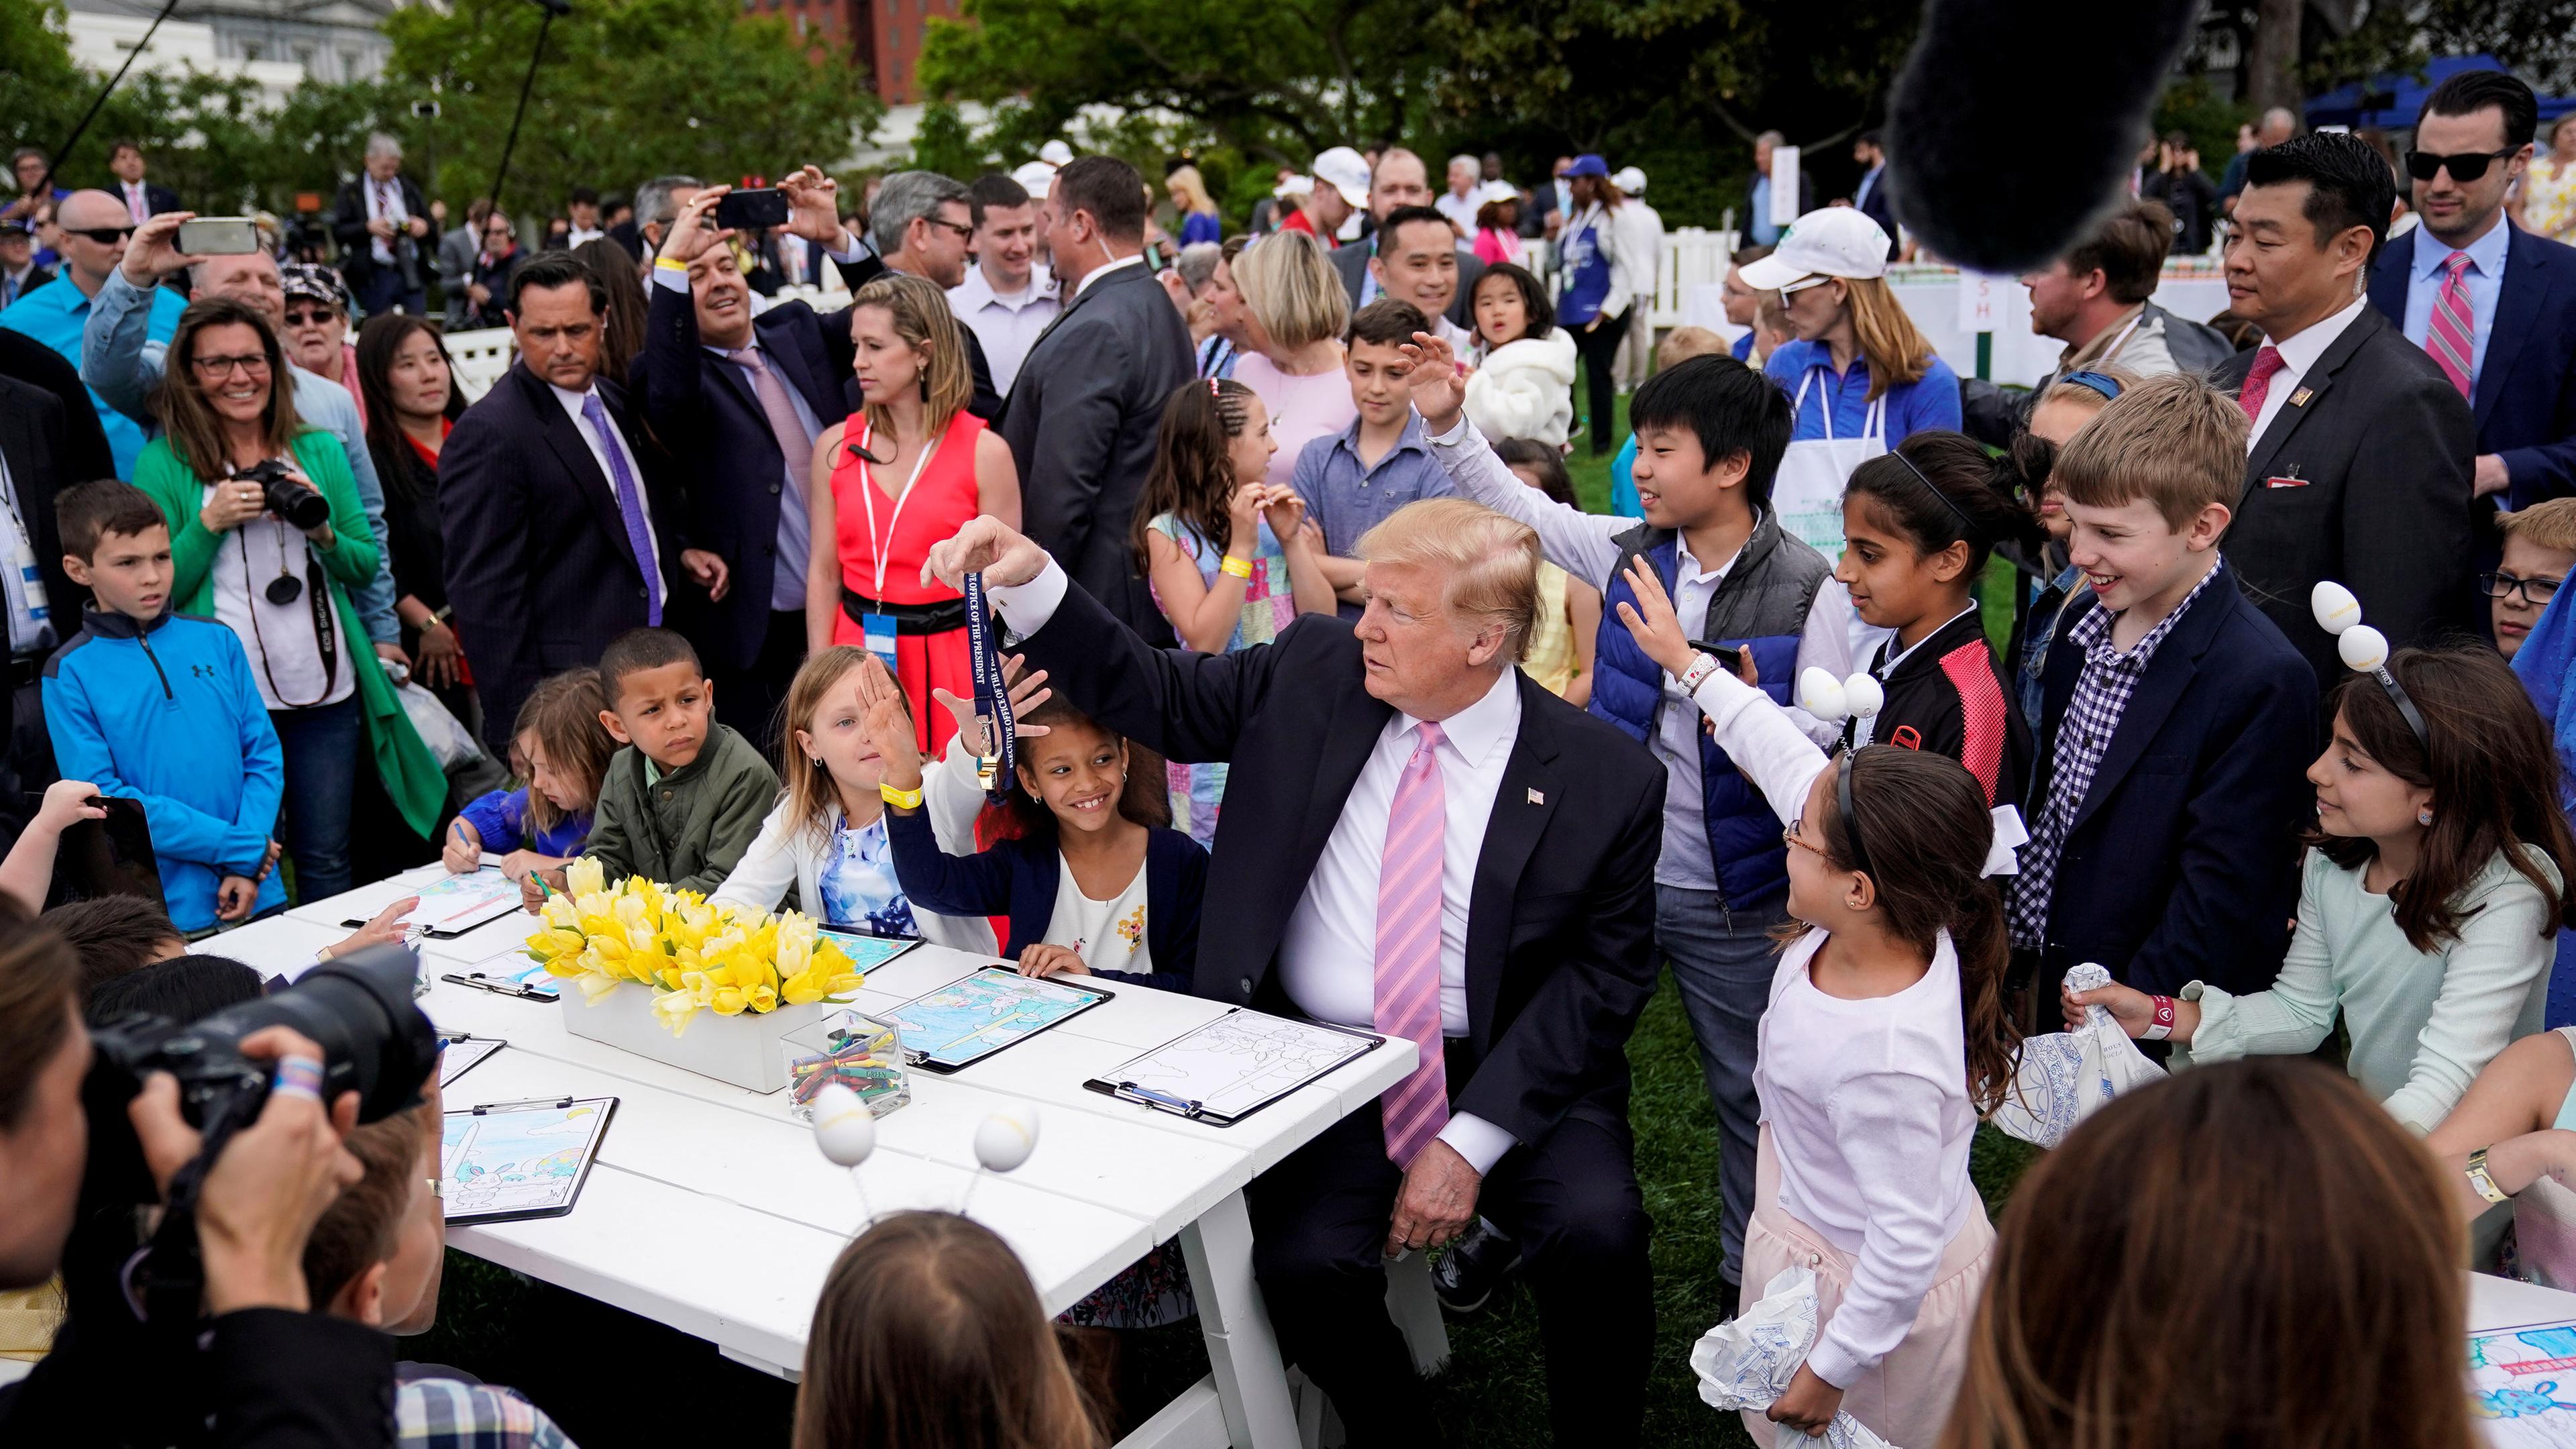 Trump bietet einem Kind seine Pfeife an während Bilder für Militärmitglieder gemalt werden in Washington am 22.04.2019